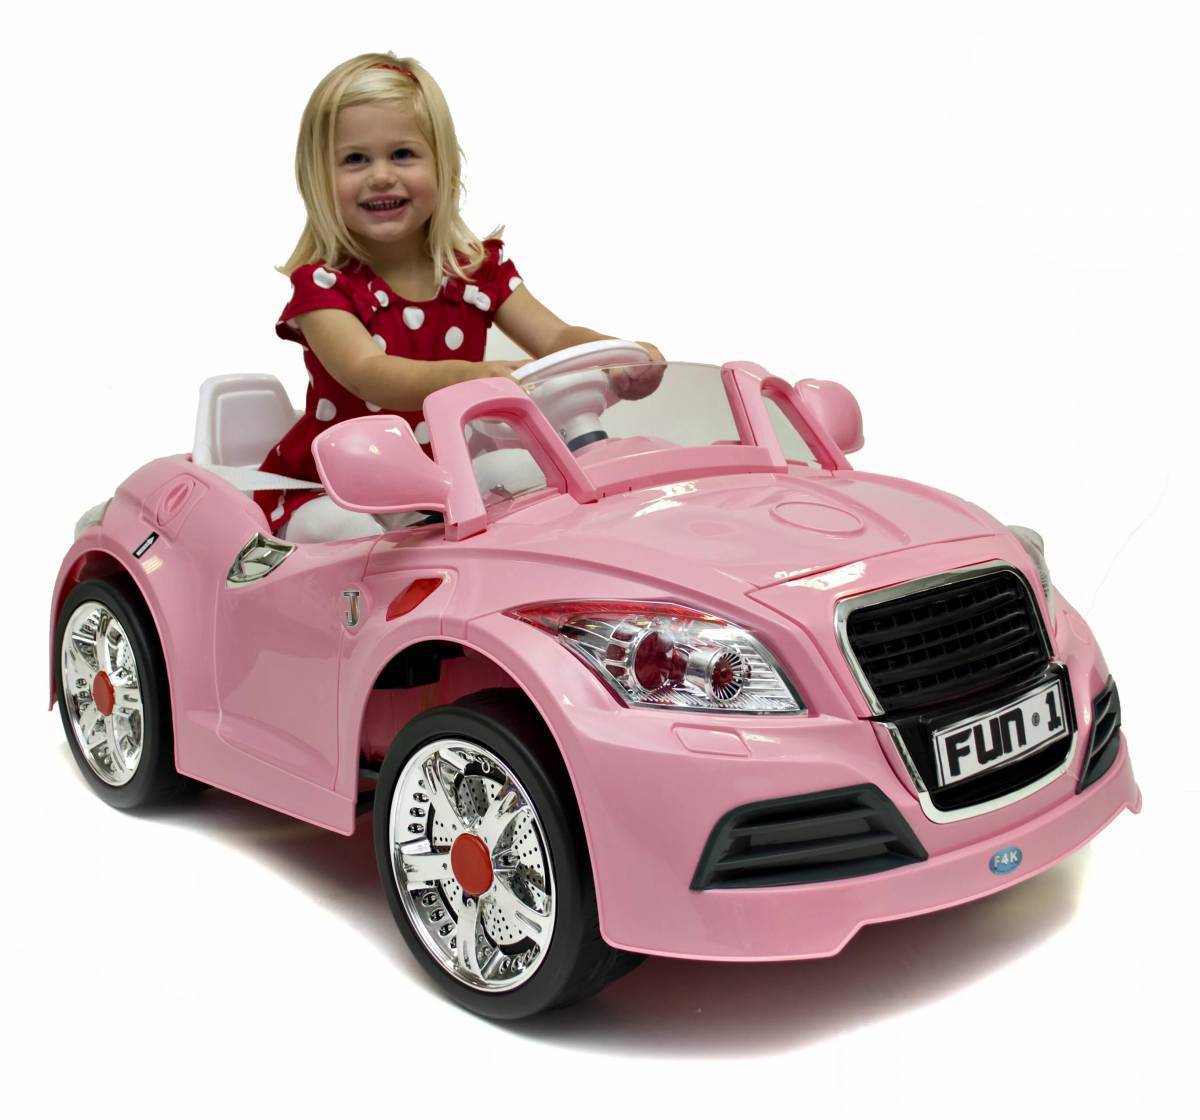 Про машину девочек. Детские машинки. Автомобиль для девочек. Детский автомобиль для девочки. Игрушечные машинки для девочек.